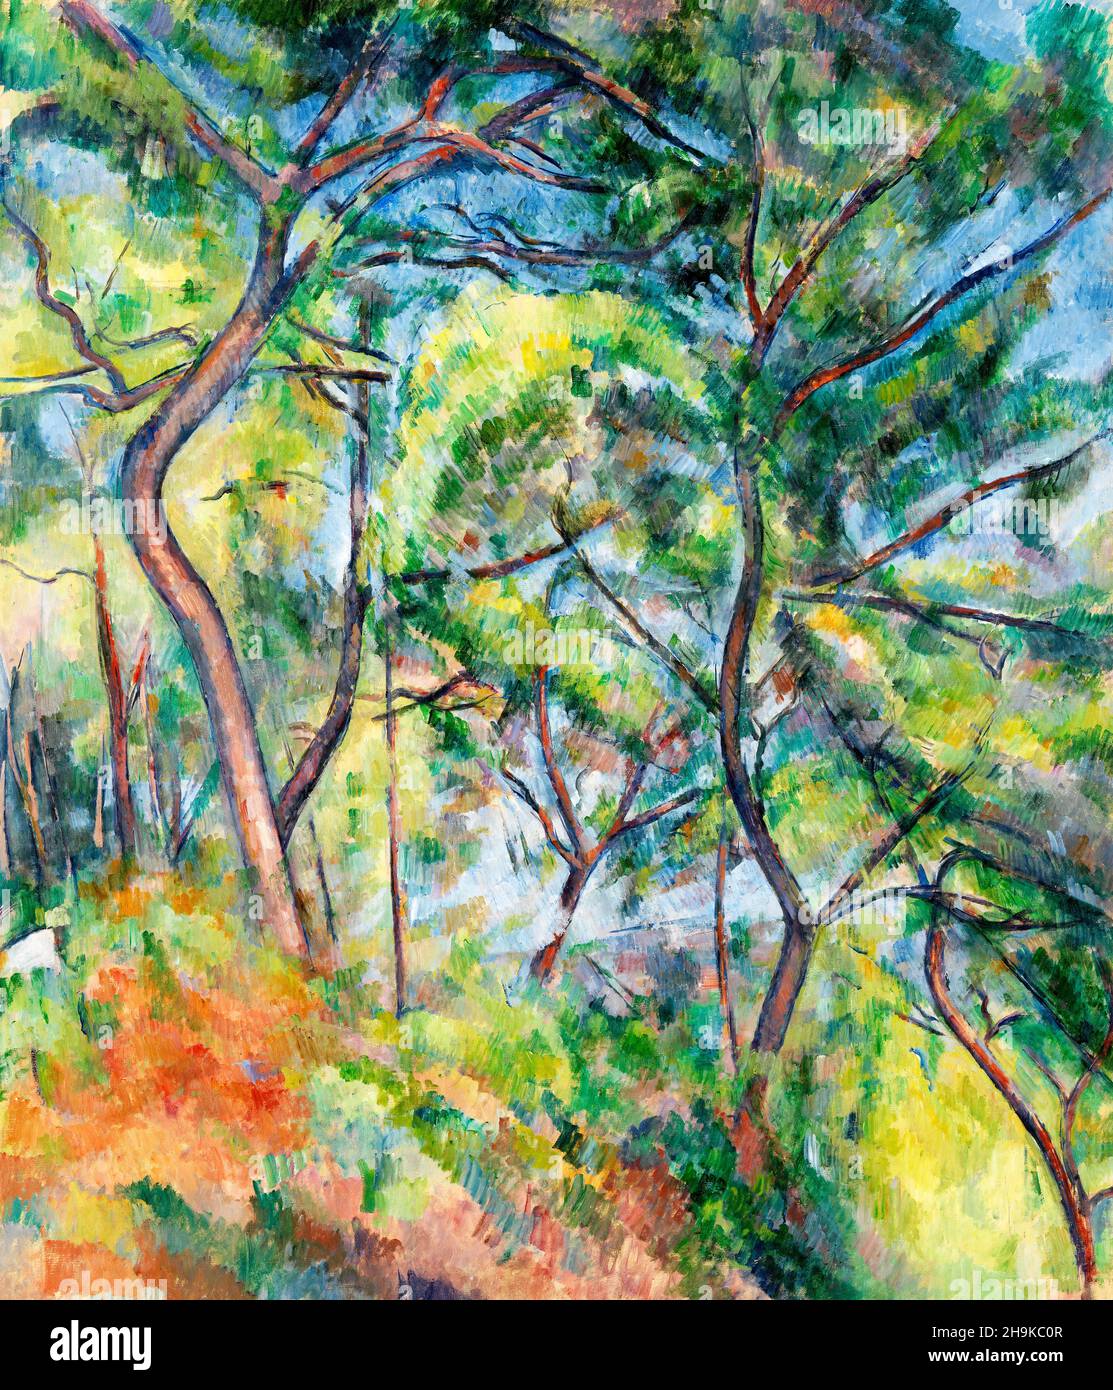 Sous-Bois par Paul Cezanne (1839-1906), huile sur toile, c.1894 Banque D'Images